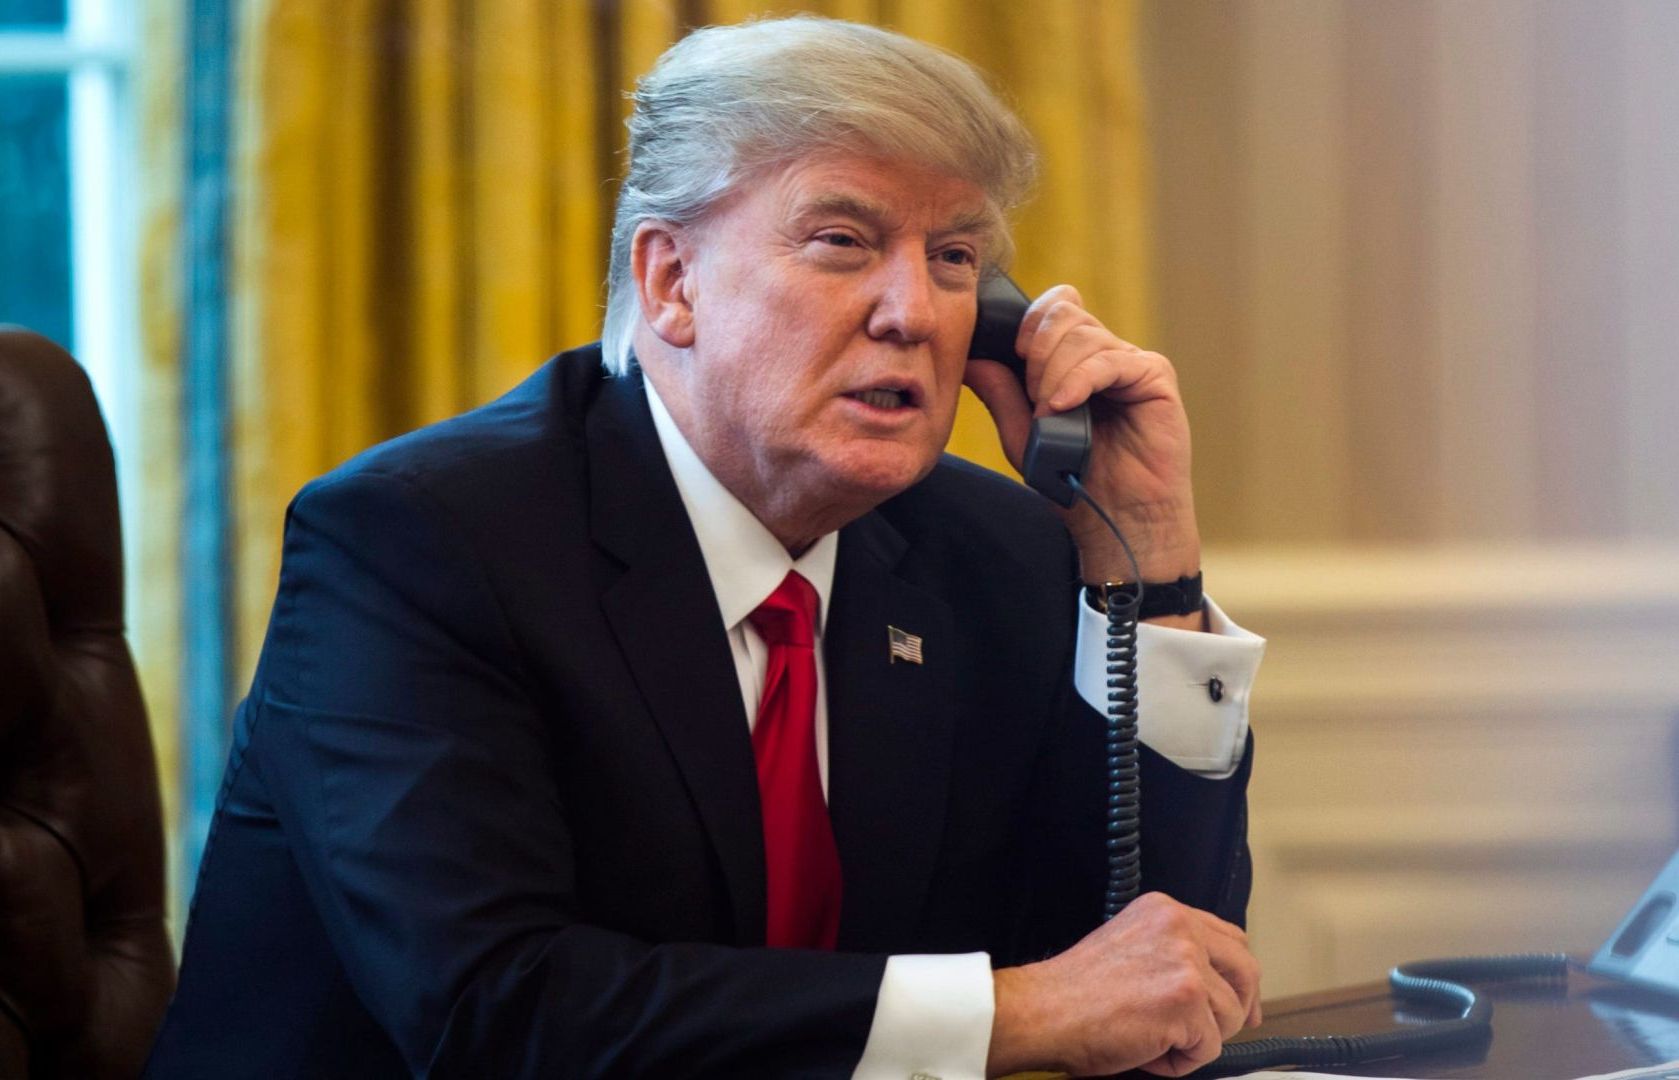 Giải thích về bê bối cuộc điện thoại với ông Zelensky, Tổng thống Trump nói muốn được tự do điện đàm